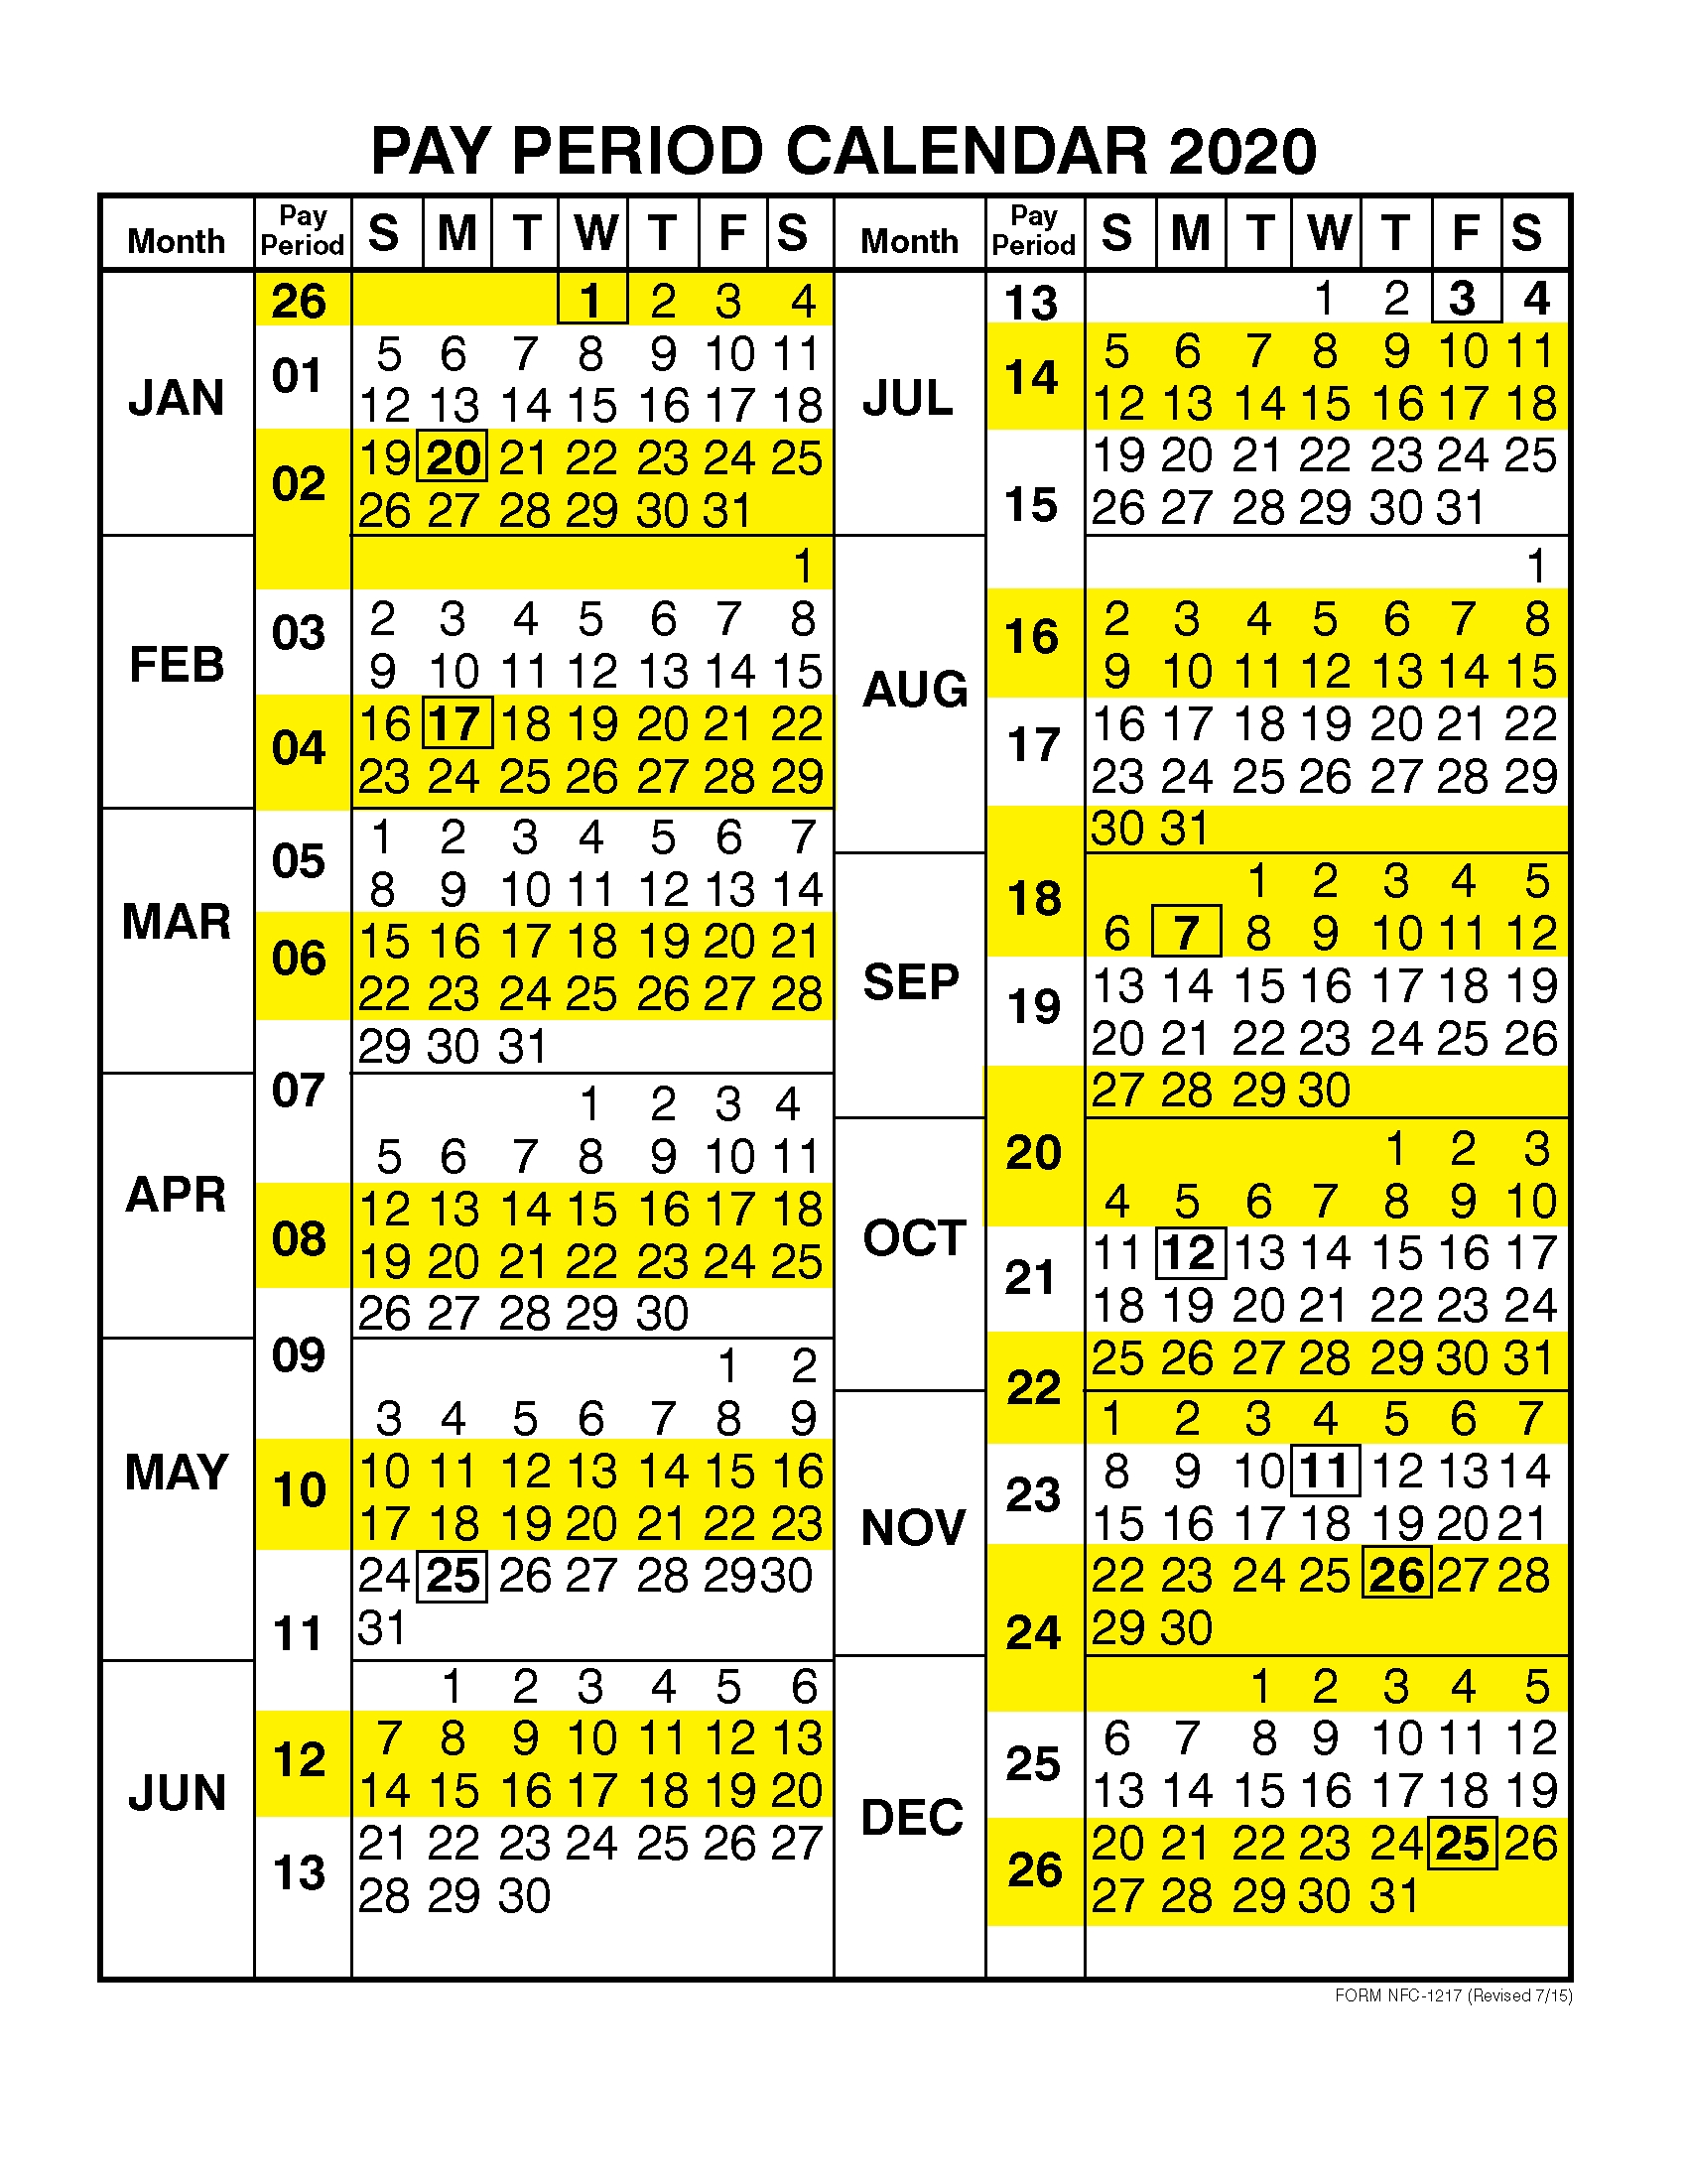 Get 2021 Payroll Calendar Federal Government Best Calendar Example